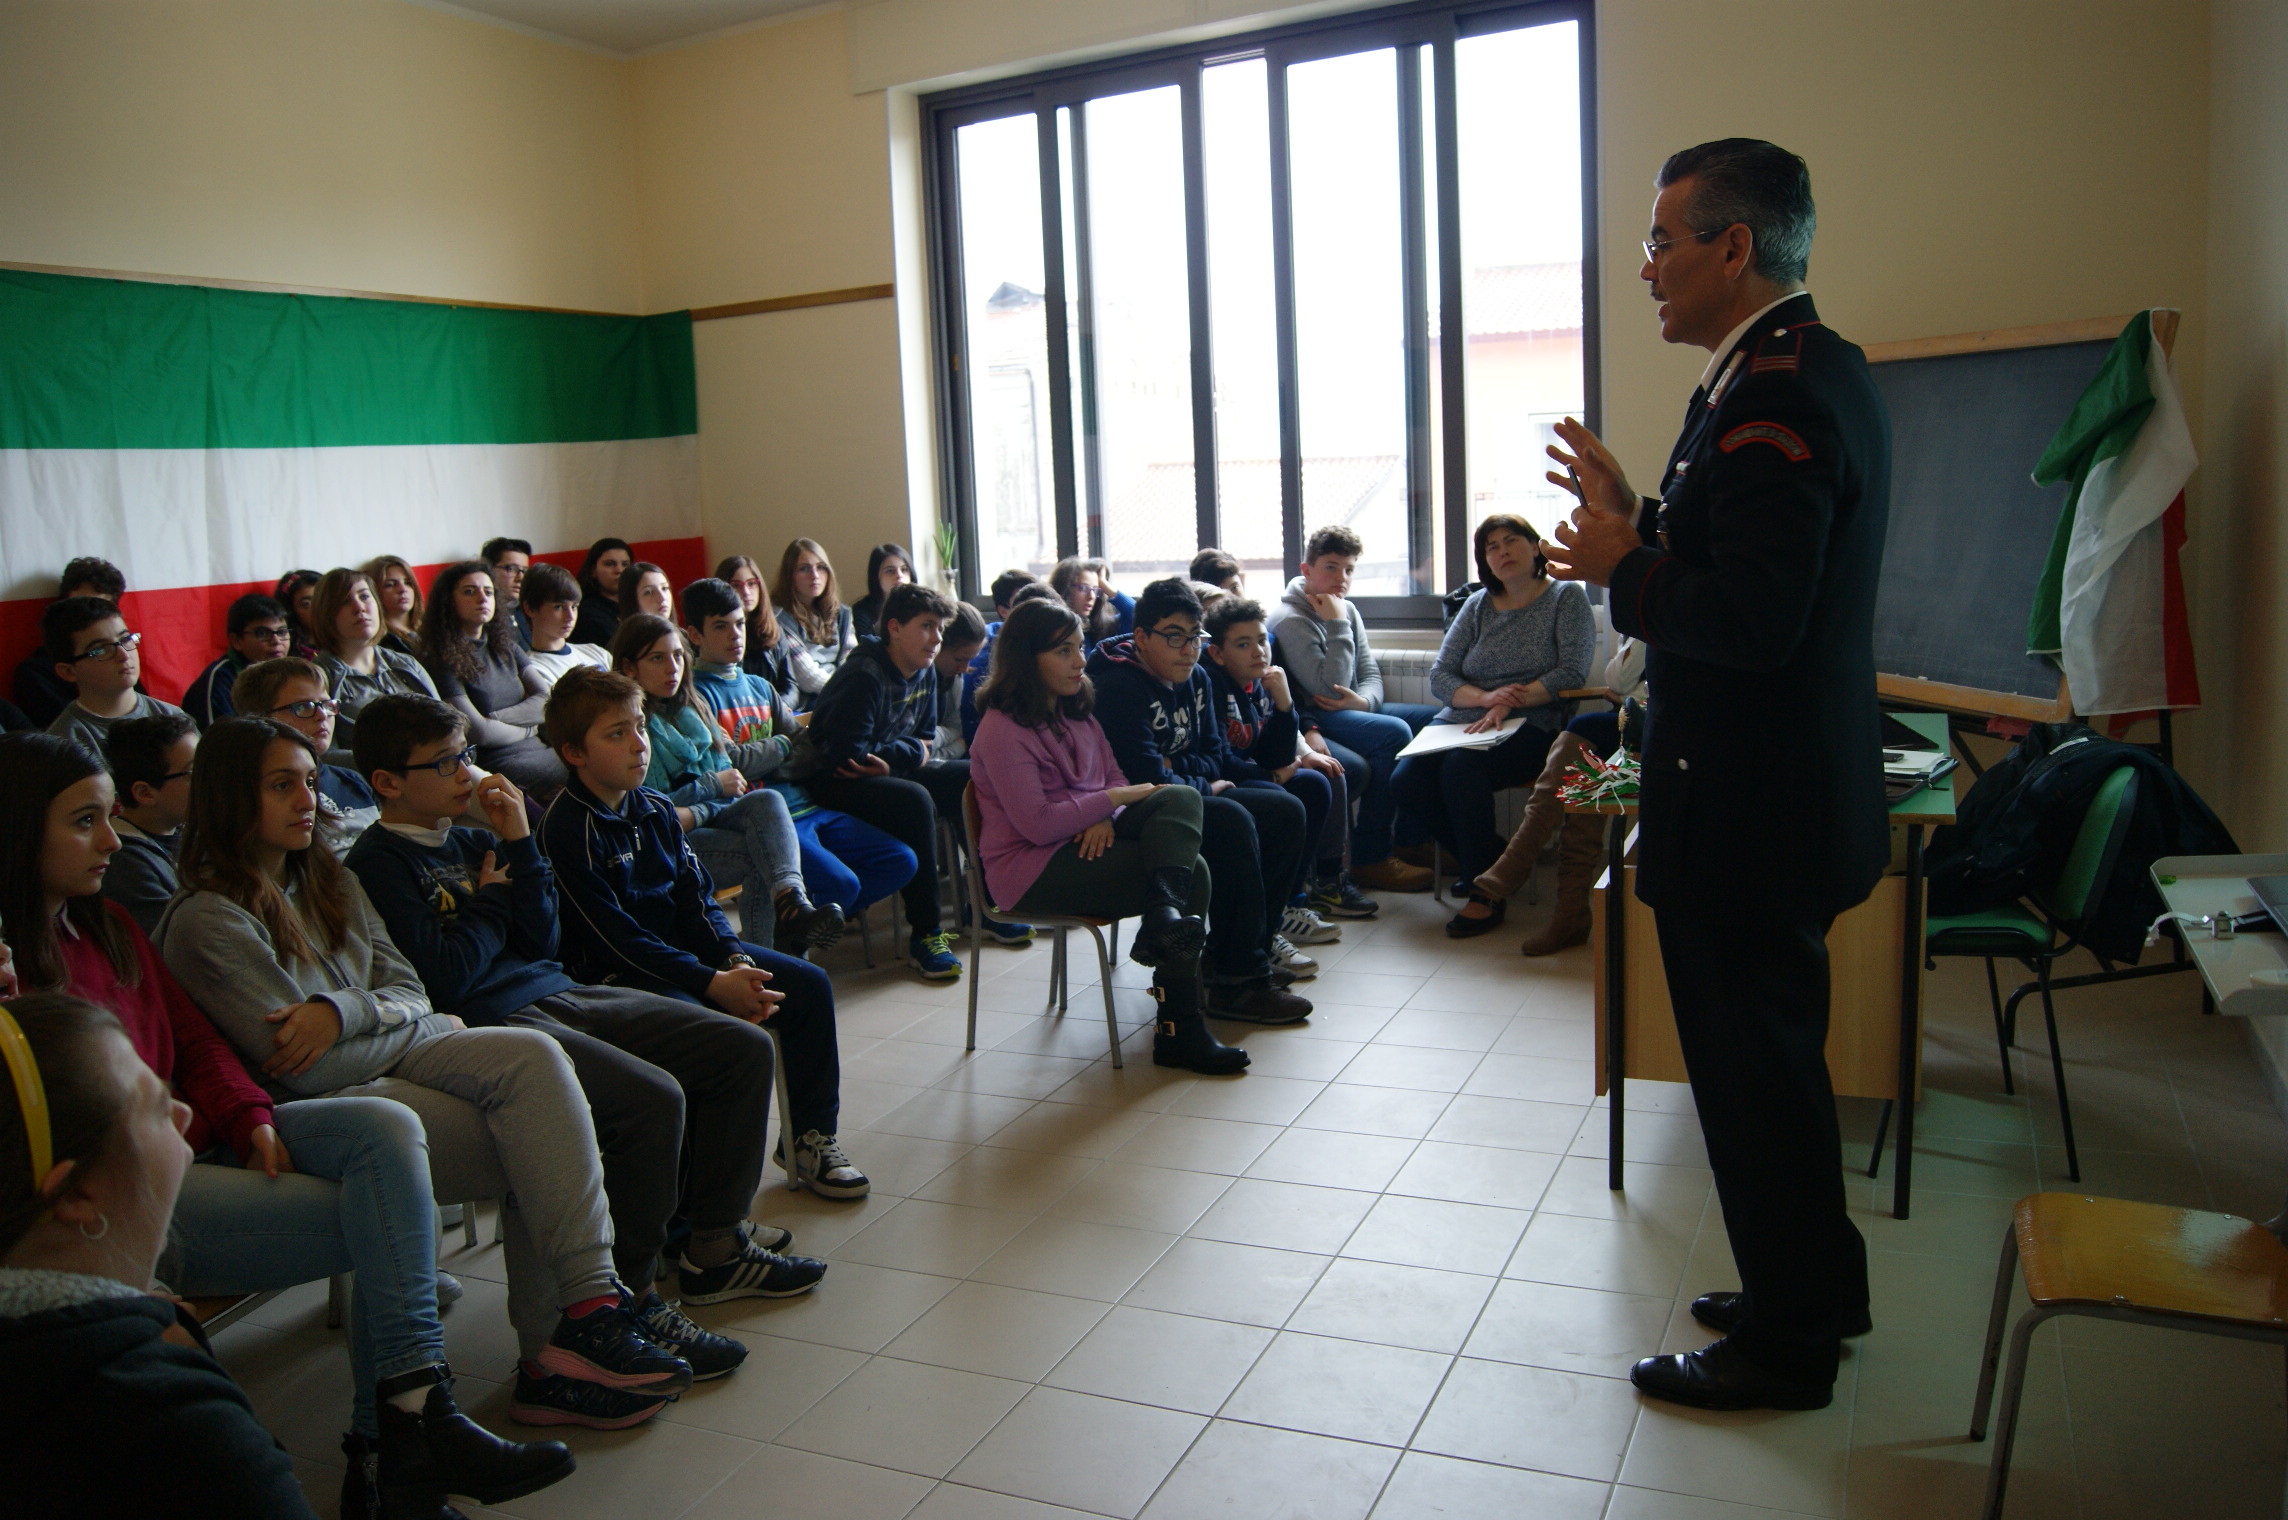 Conferenza dei Carabinieri agli studenti del ‘De Blasio’ sulla ‘cultura della legalità’